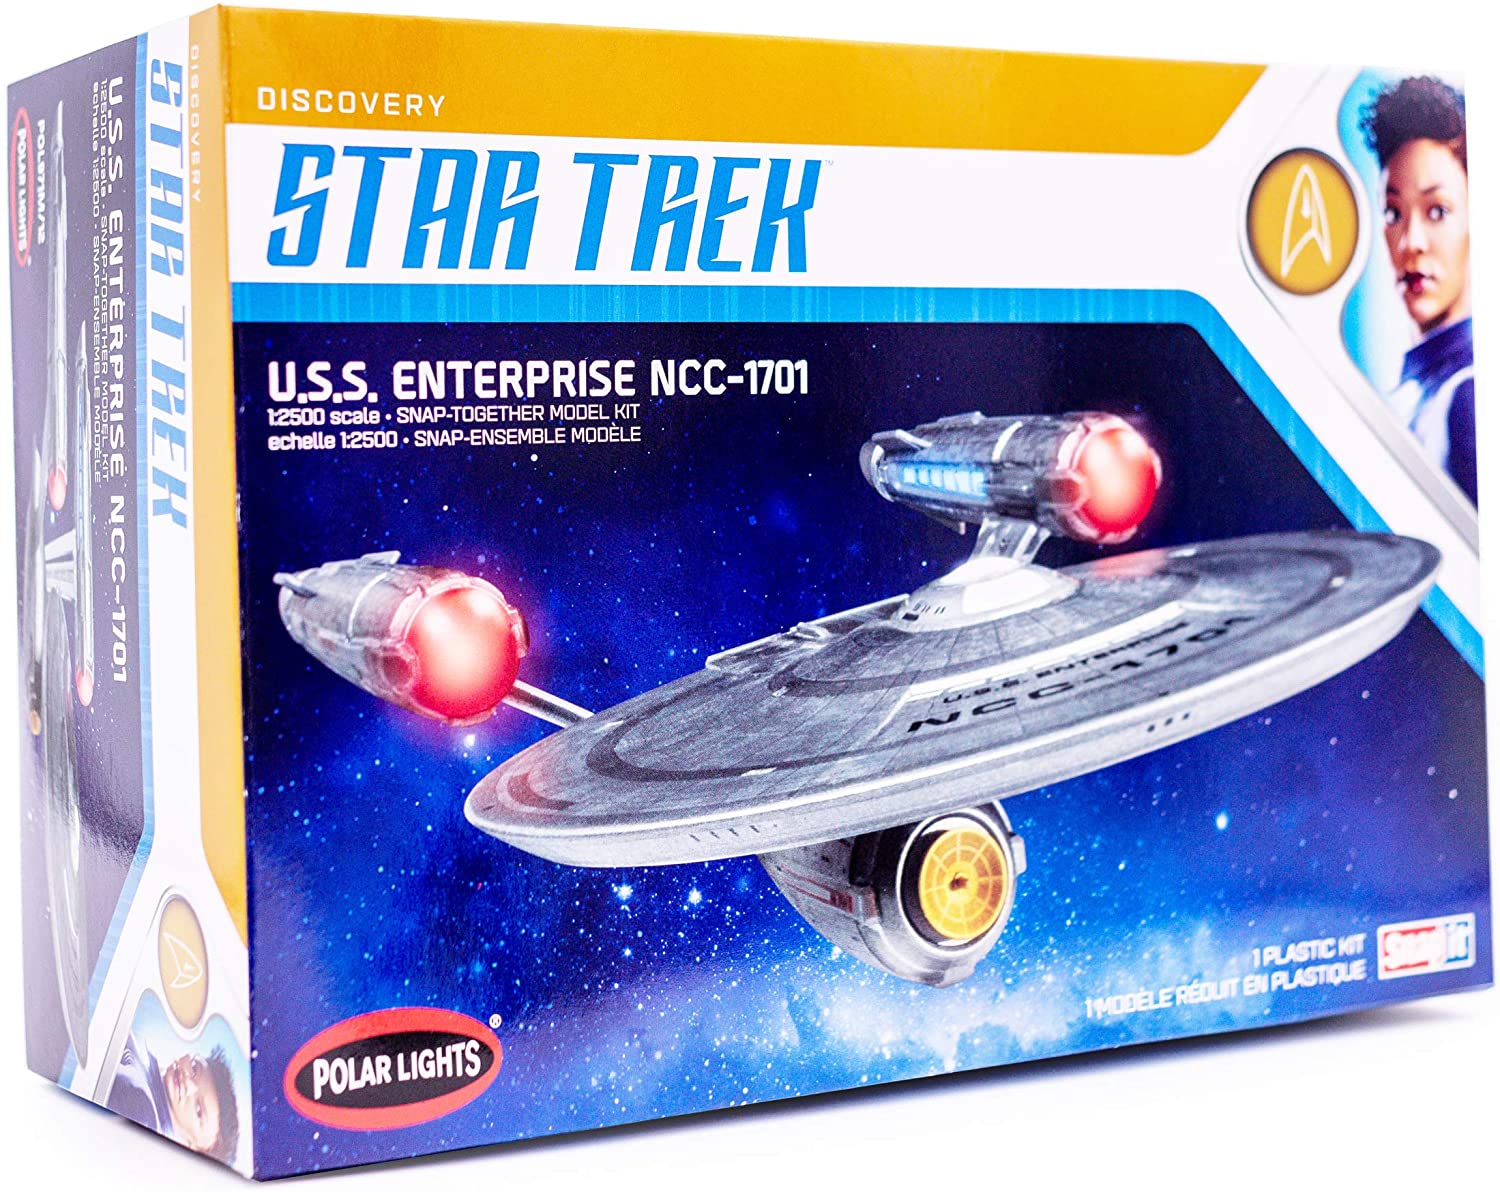 Modèle réduit Polar Light Star Trek - U.S.S. Enterprise NCC-1701